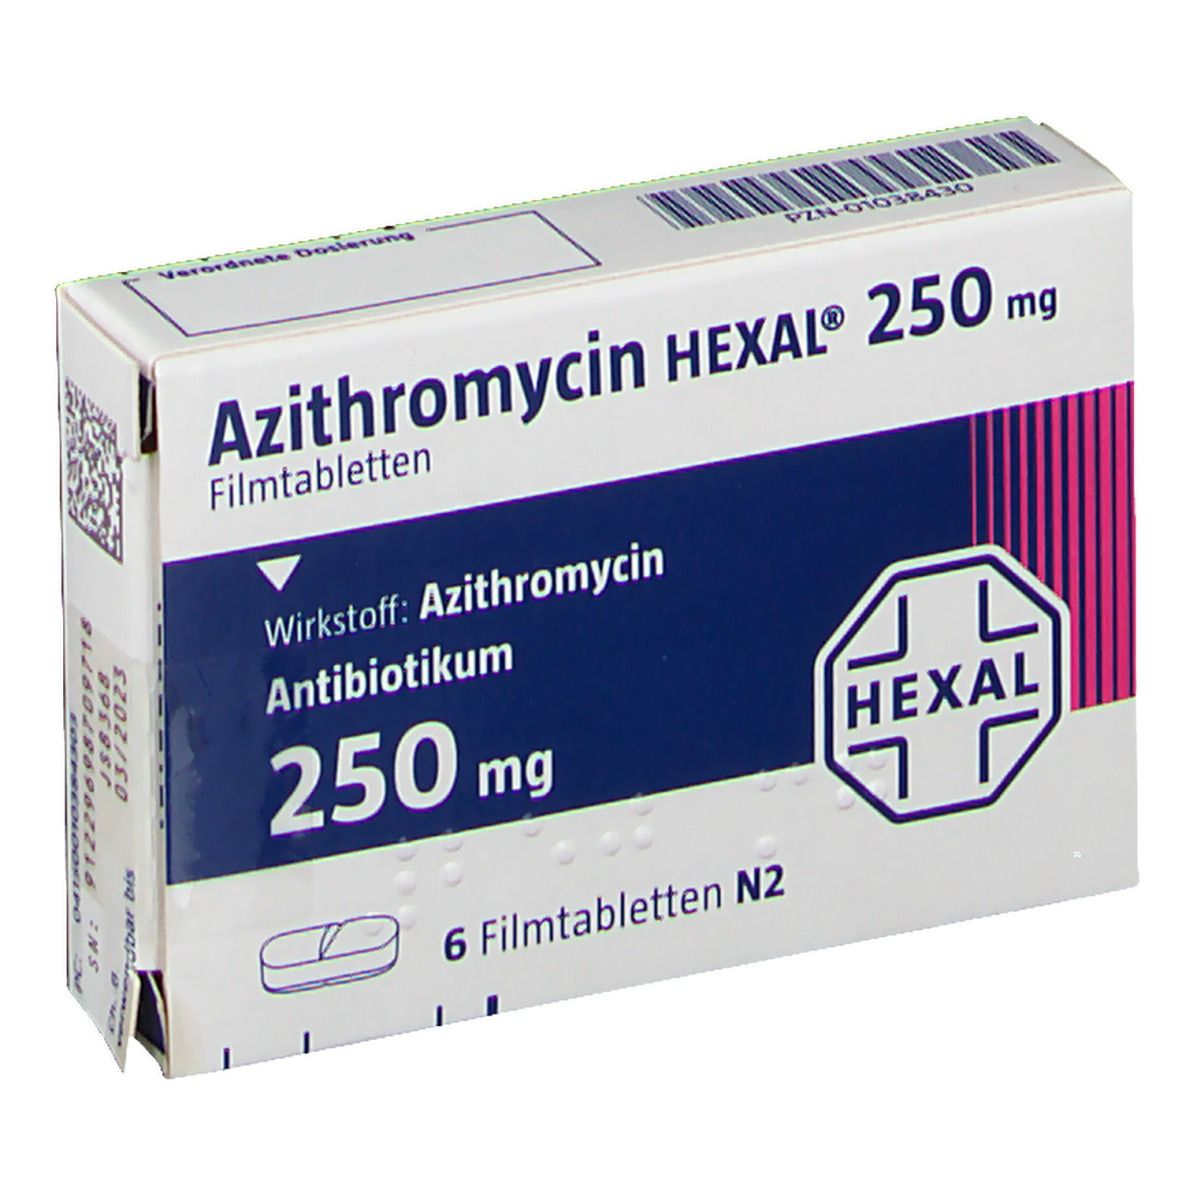 Azithromycin HEXAL® 250 mg